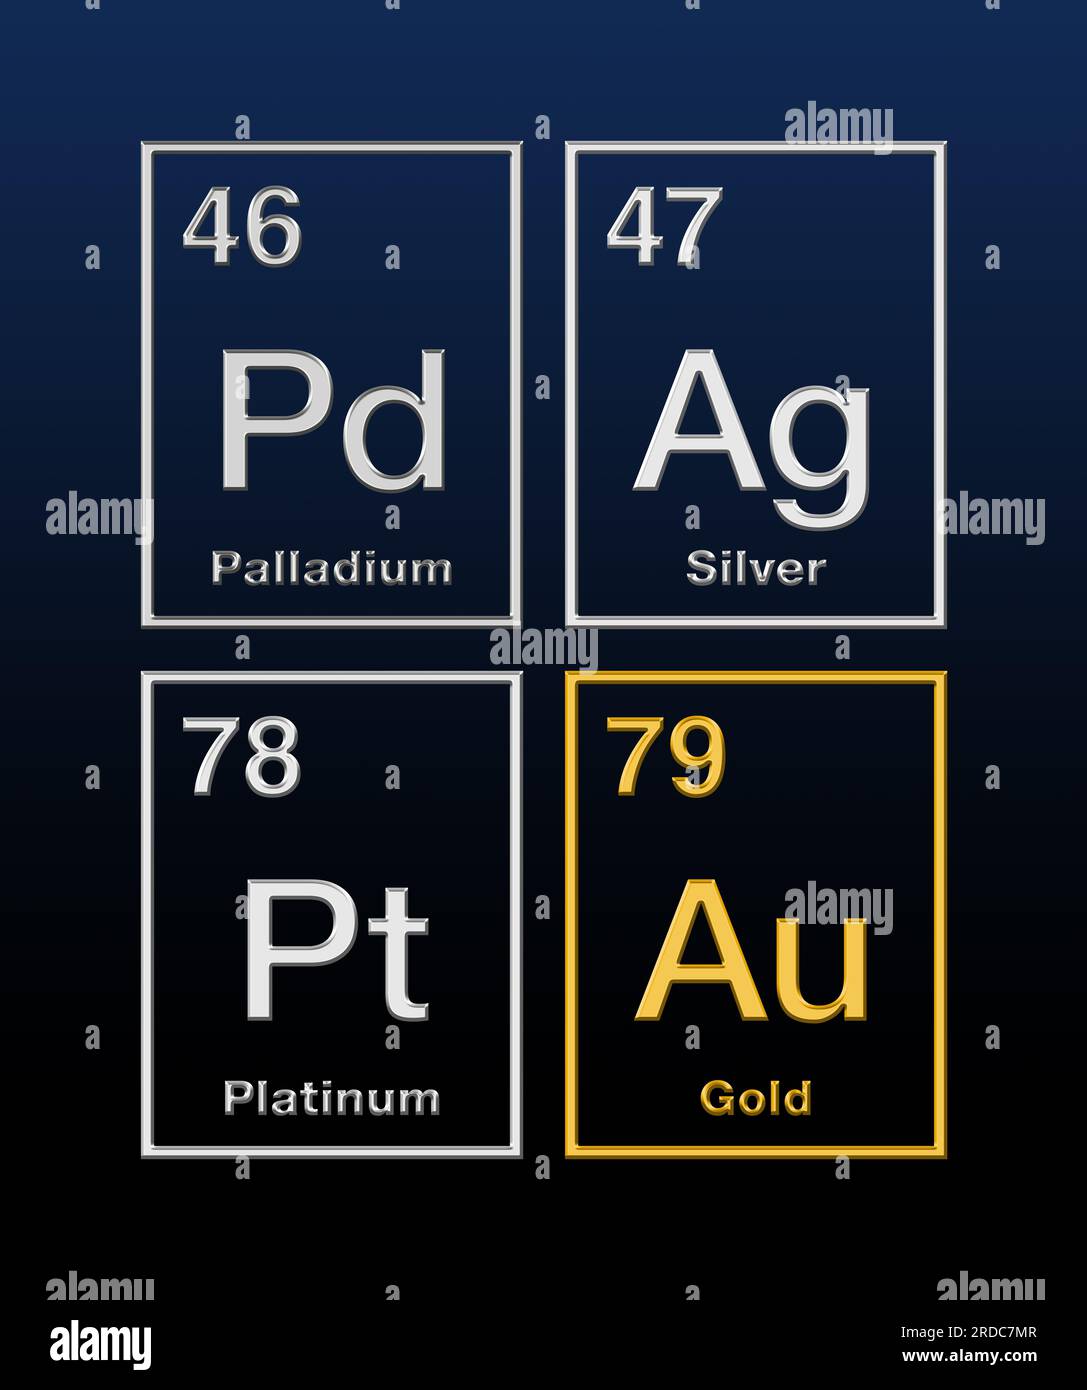 Edelmetalle Gold, Silber, Platin und Palladium aus dem Periodensystem, mit Atomzahlen und Reliefform. Chemische Elemente. Stockfoto